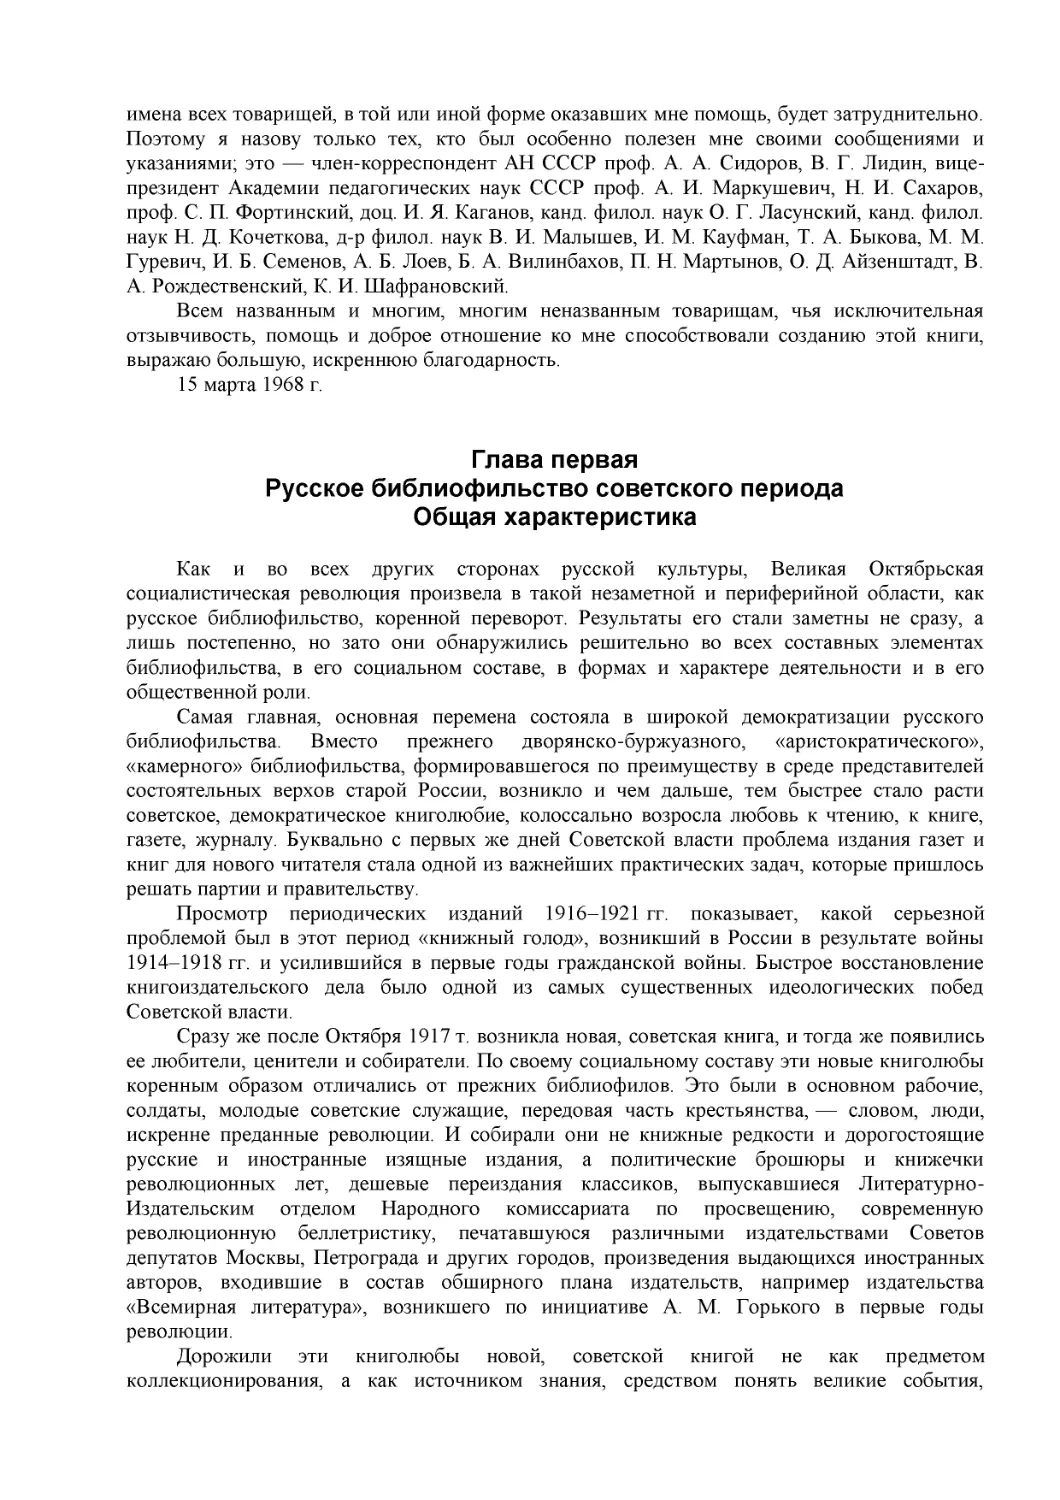 Глава первая
Русское библиофильство советского периода
Общая характеристика